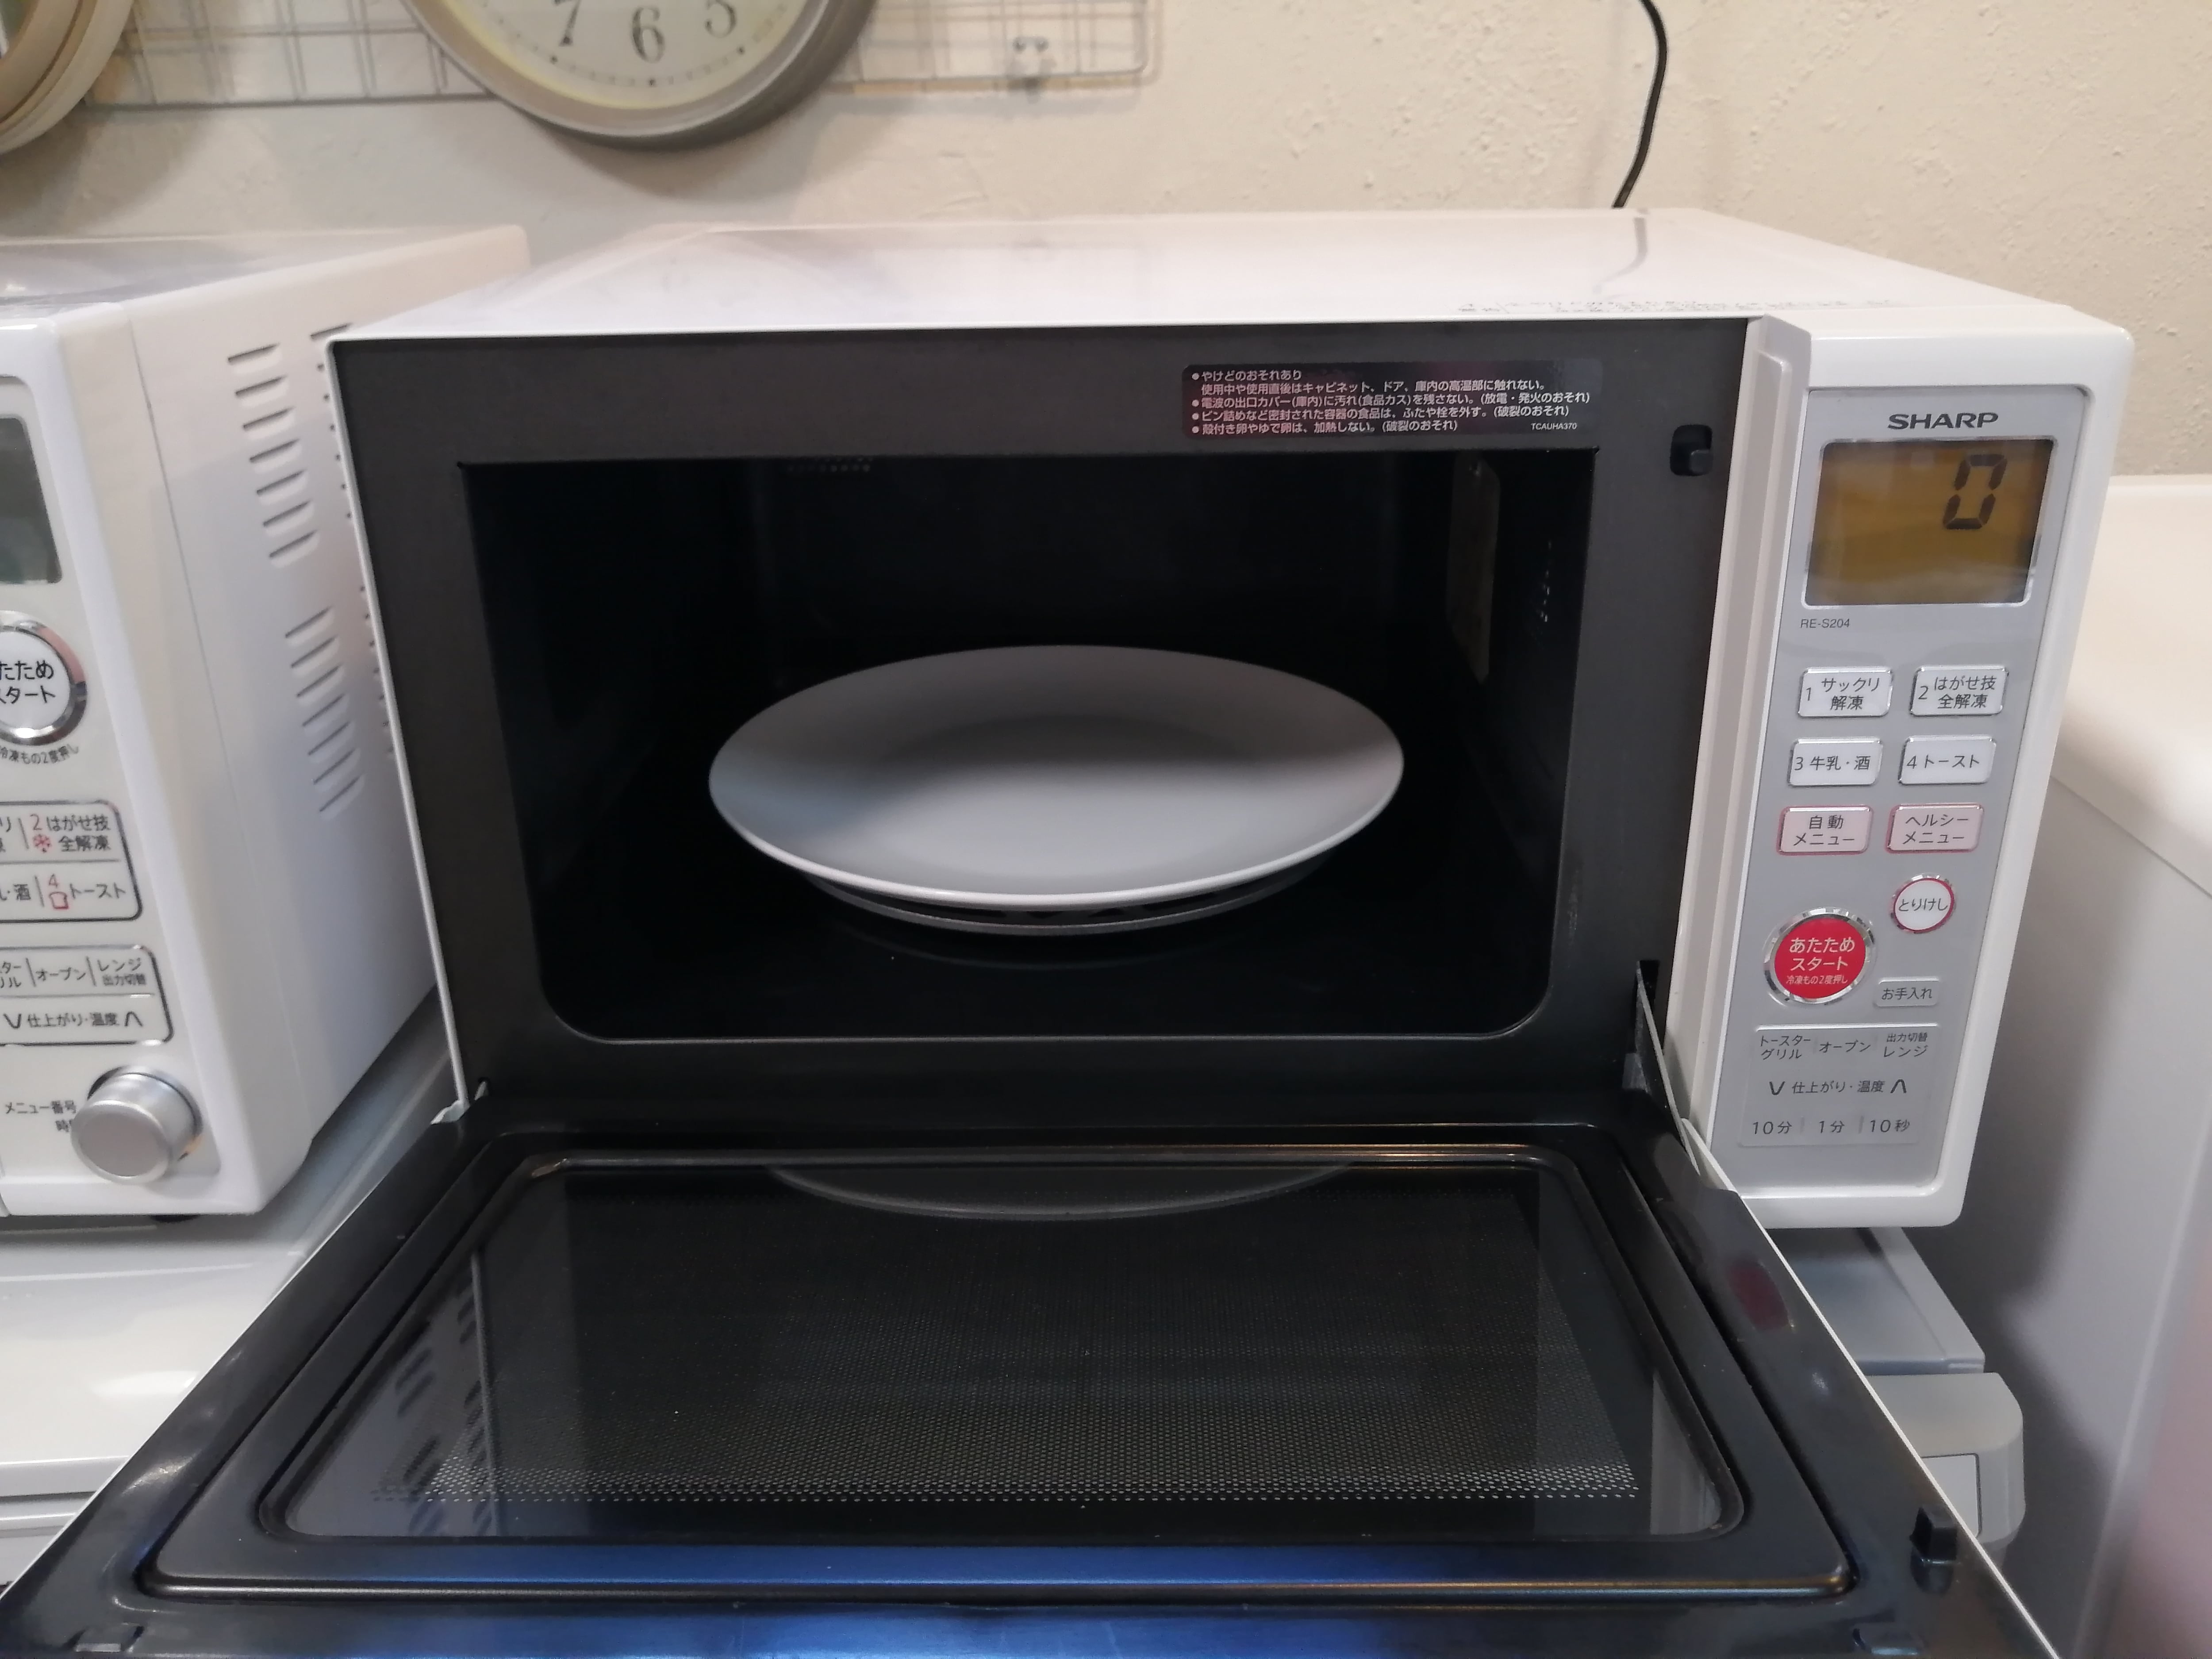 2012年製 SHARP オーブン機能付き 電子レンジ RE-S204-W | 中村区亀島 